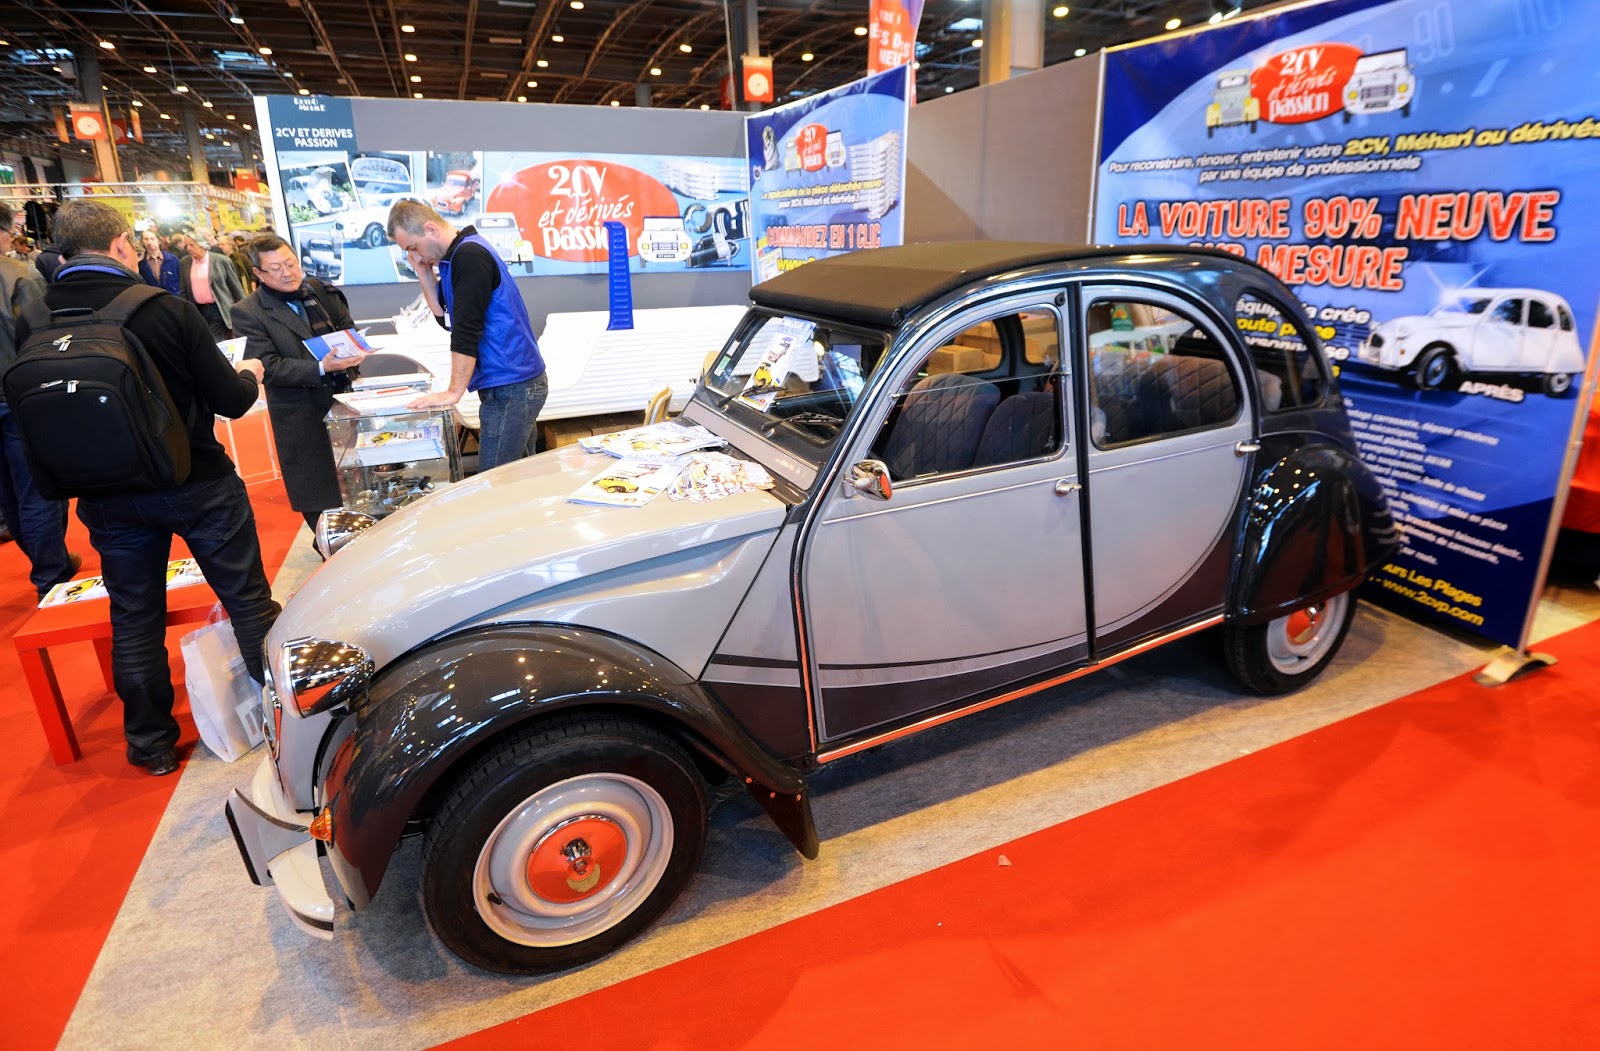 retromobile vintage cars expo in portes de versailles  paris